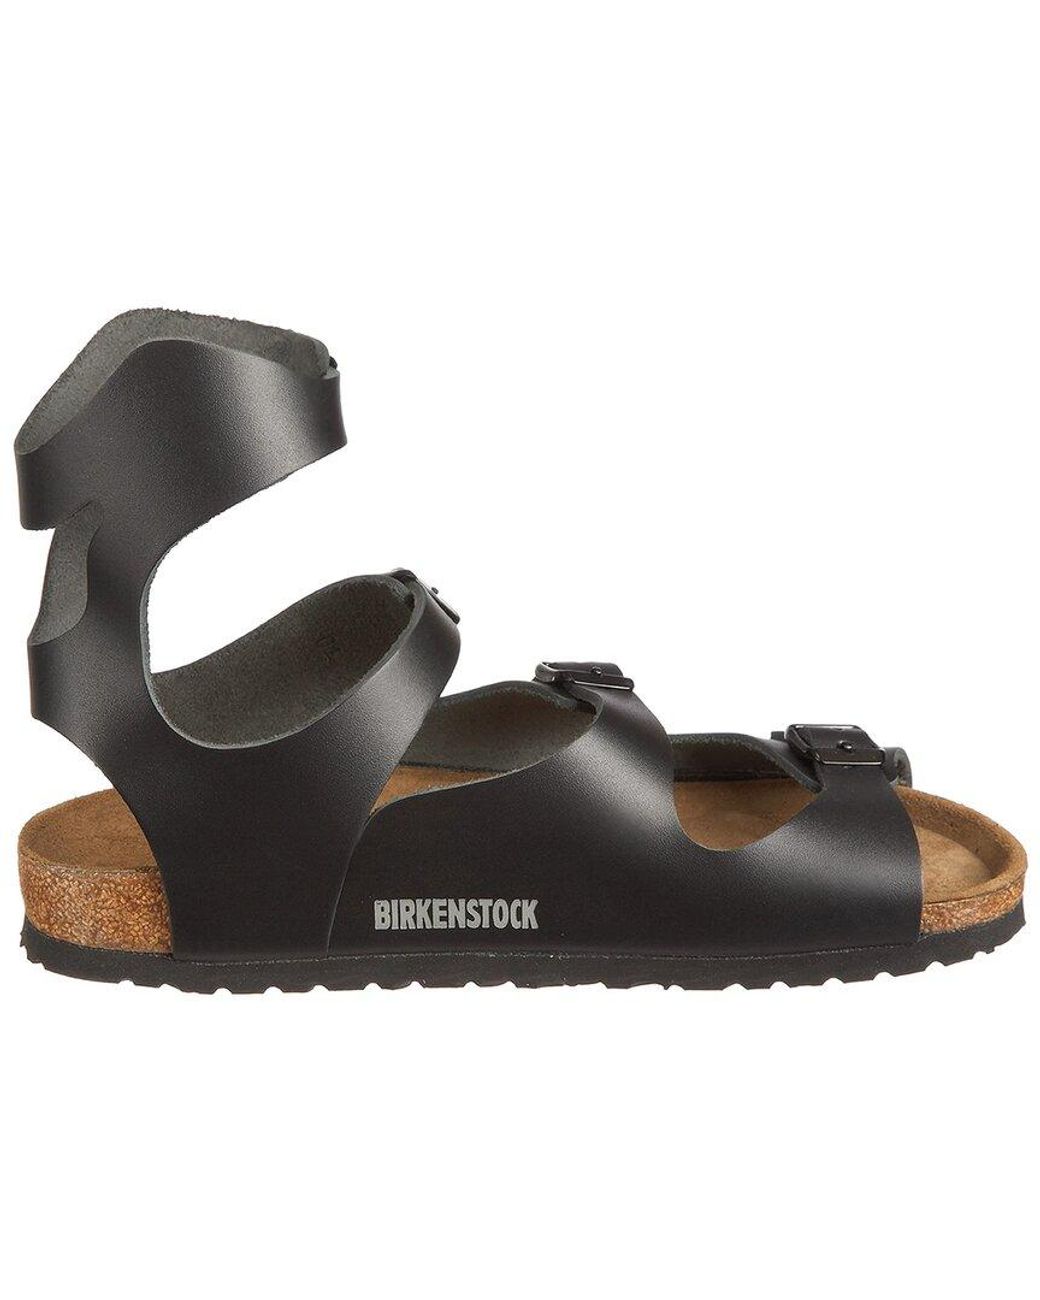 Birkenstock Athens Leather Sandal in Black | Lyst